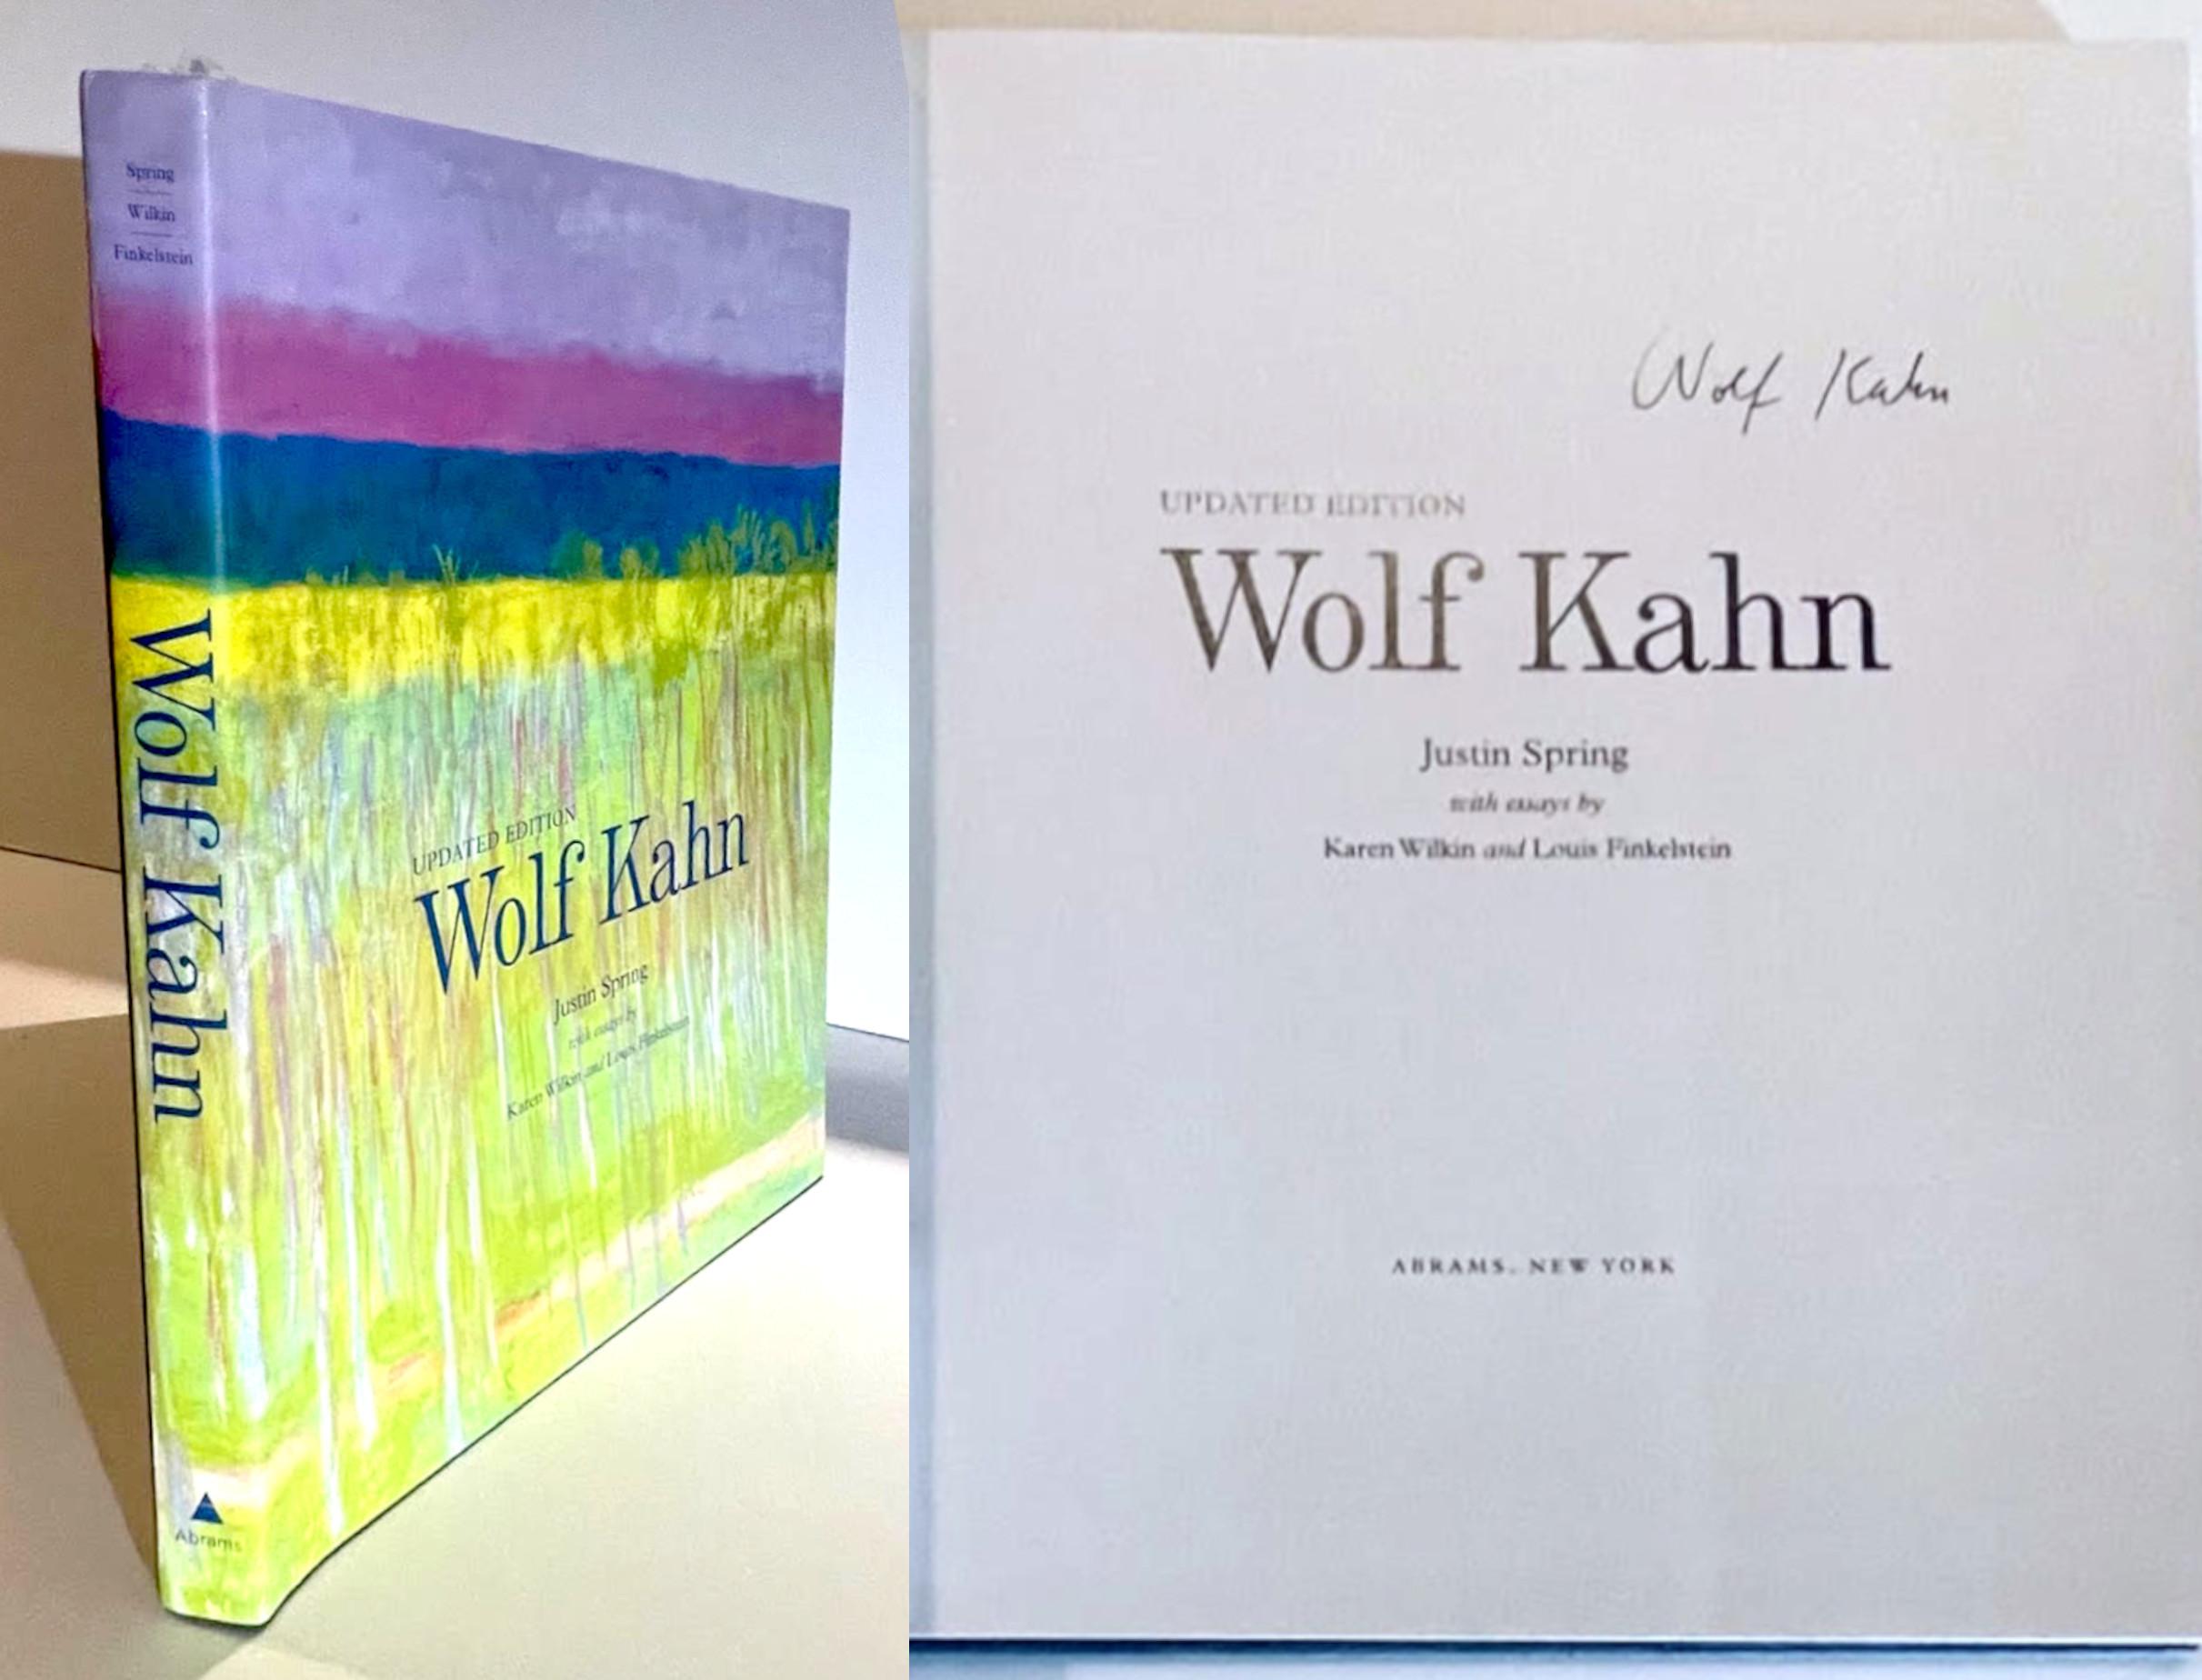 Wolf Kahn (handsigniert von Wolf Kahn), 2011
Gebundene Monographie mit Schutzumschlag (handsigniert von Wolf Kahn)
Handsigniert von Wolf Kahn auf dem Titelblatt
13 × 12 × 1 1/2 Zoll
Diese prächtig illustrierte gebundene Monografie mit Schutzumschlag